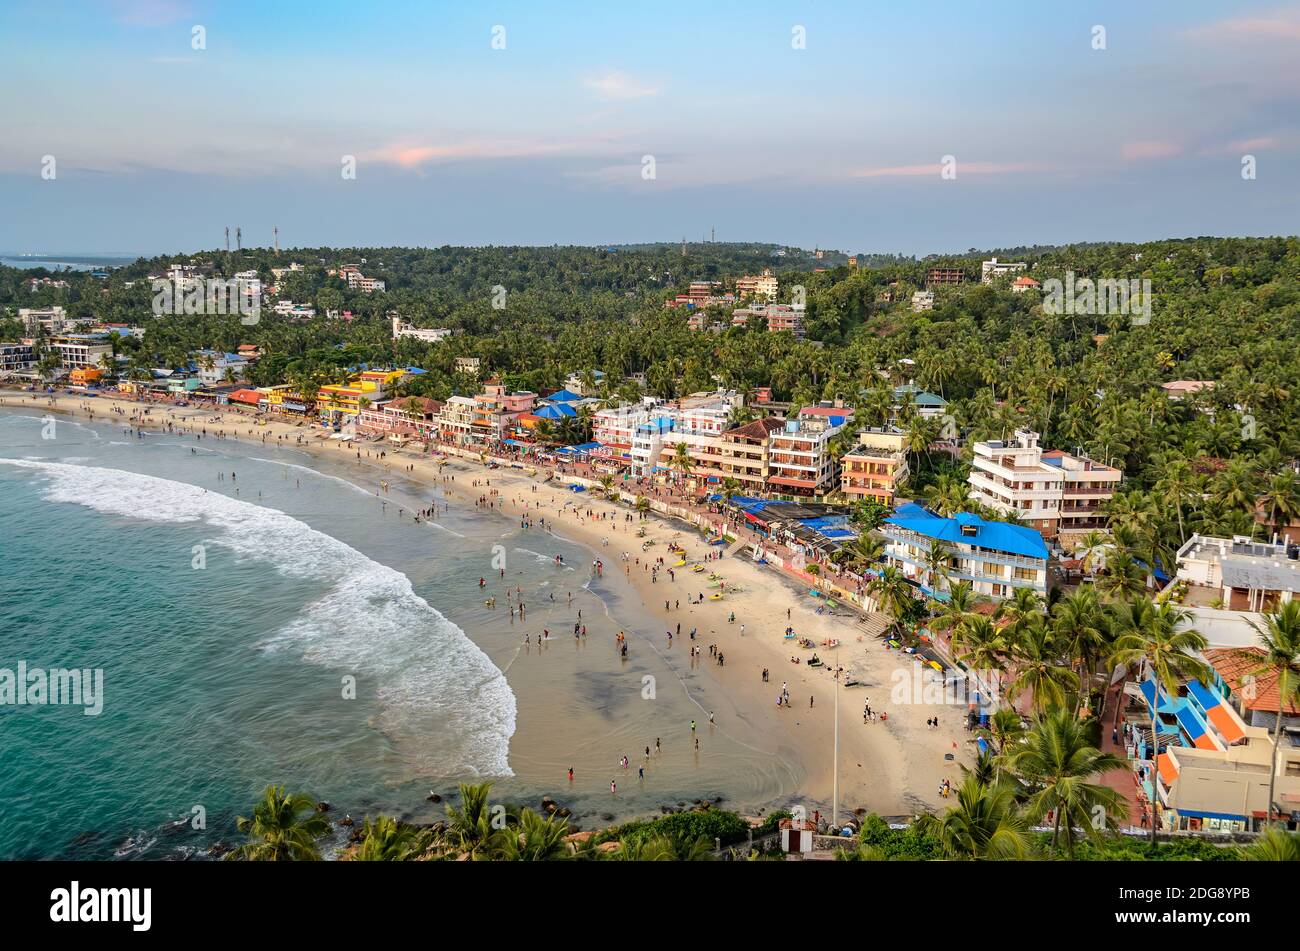 Aerial photo of people playing on the beach in Vizhinjam, Thiruvananthapuram, Kerala, India. Stock Photo